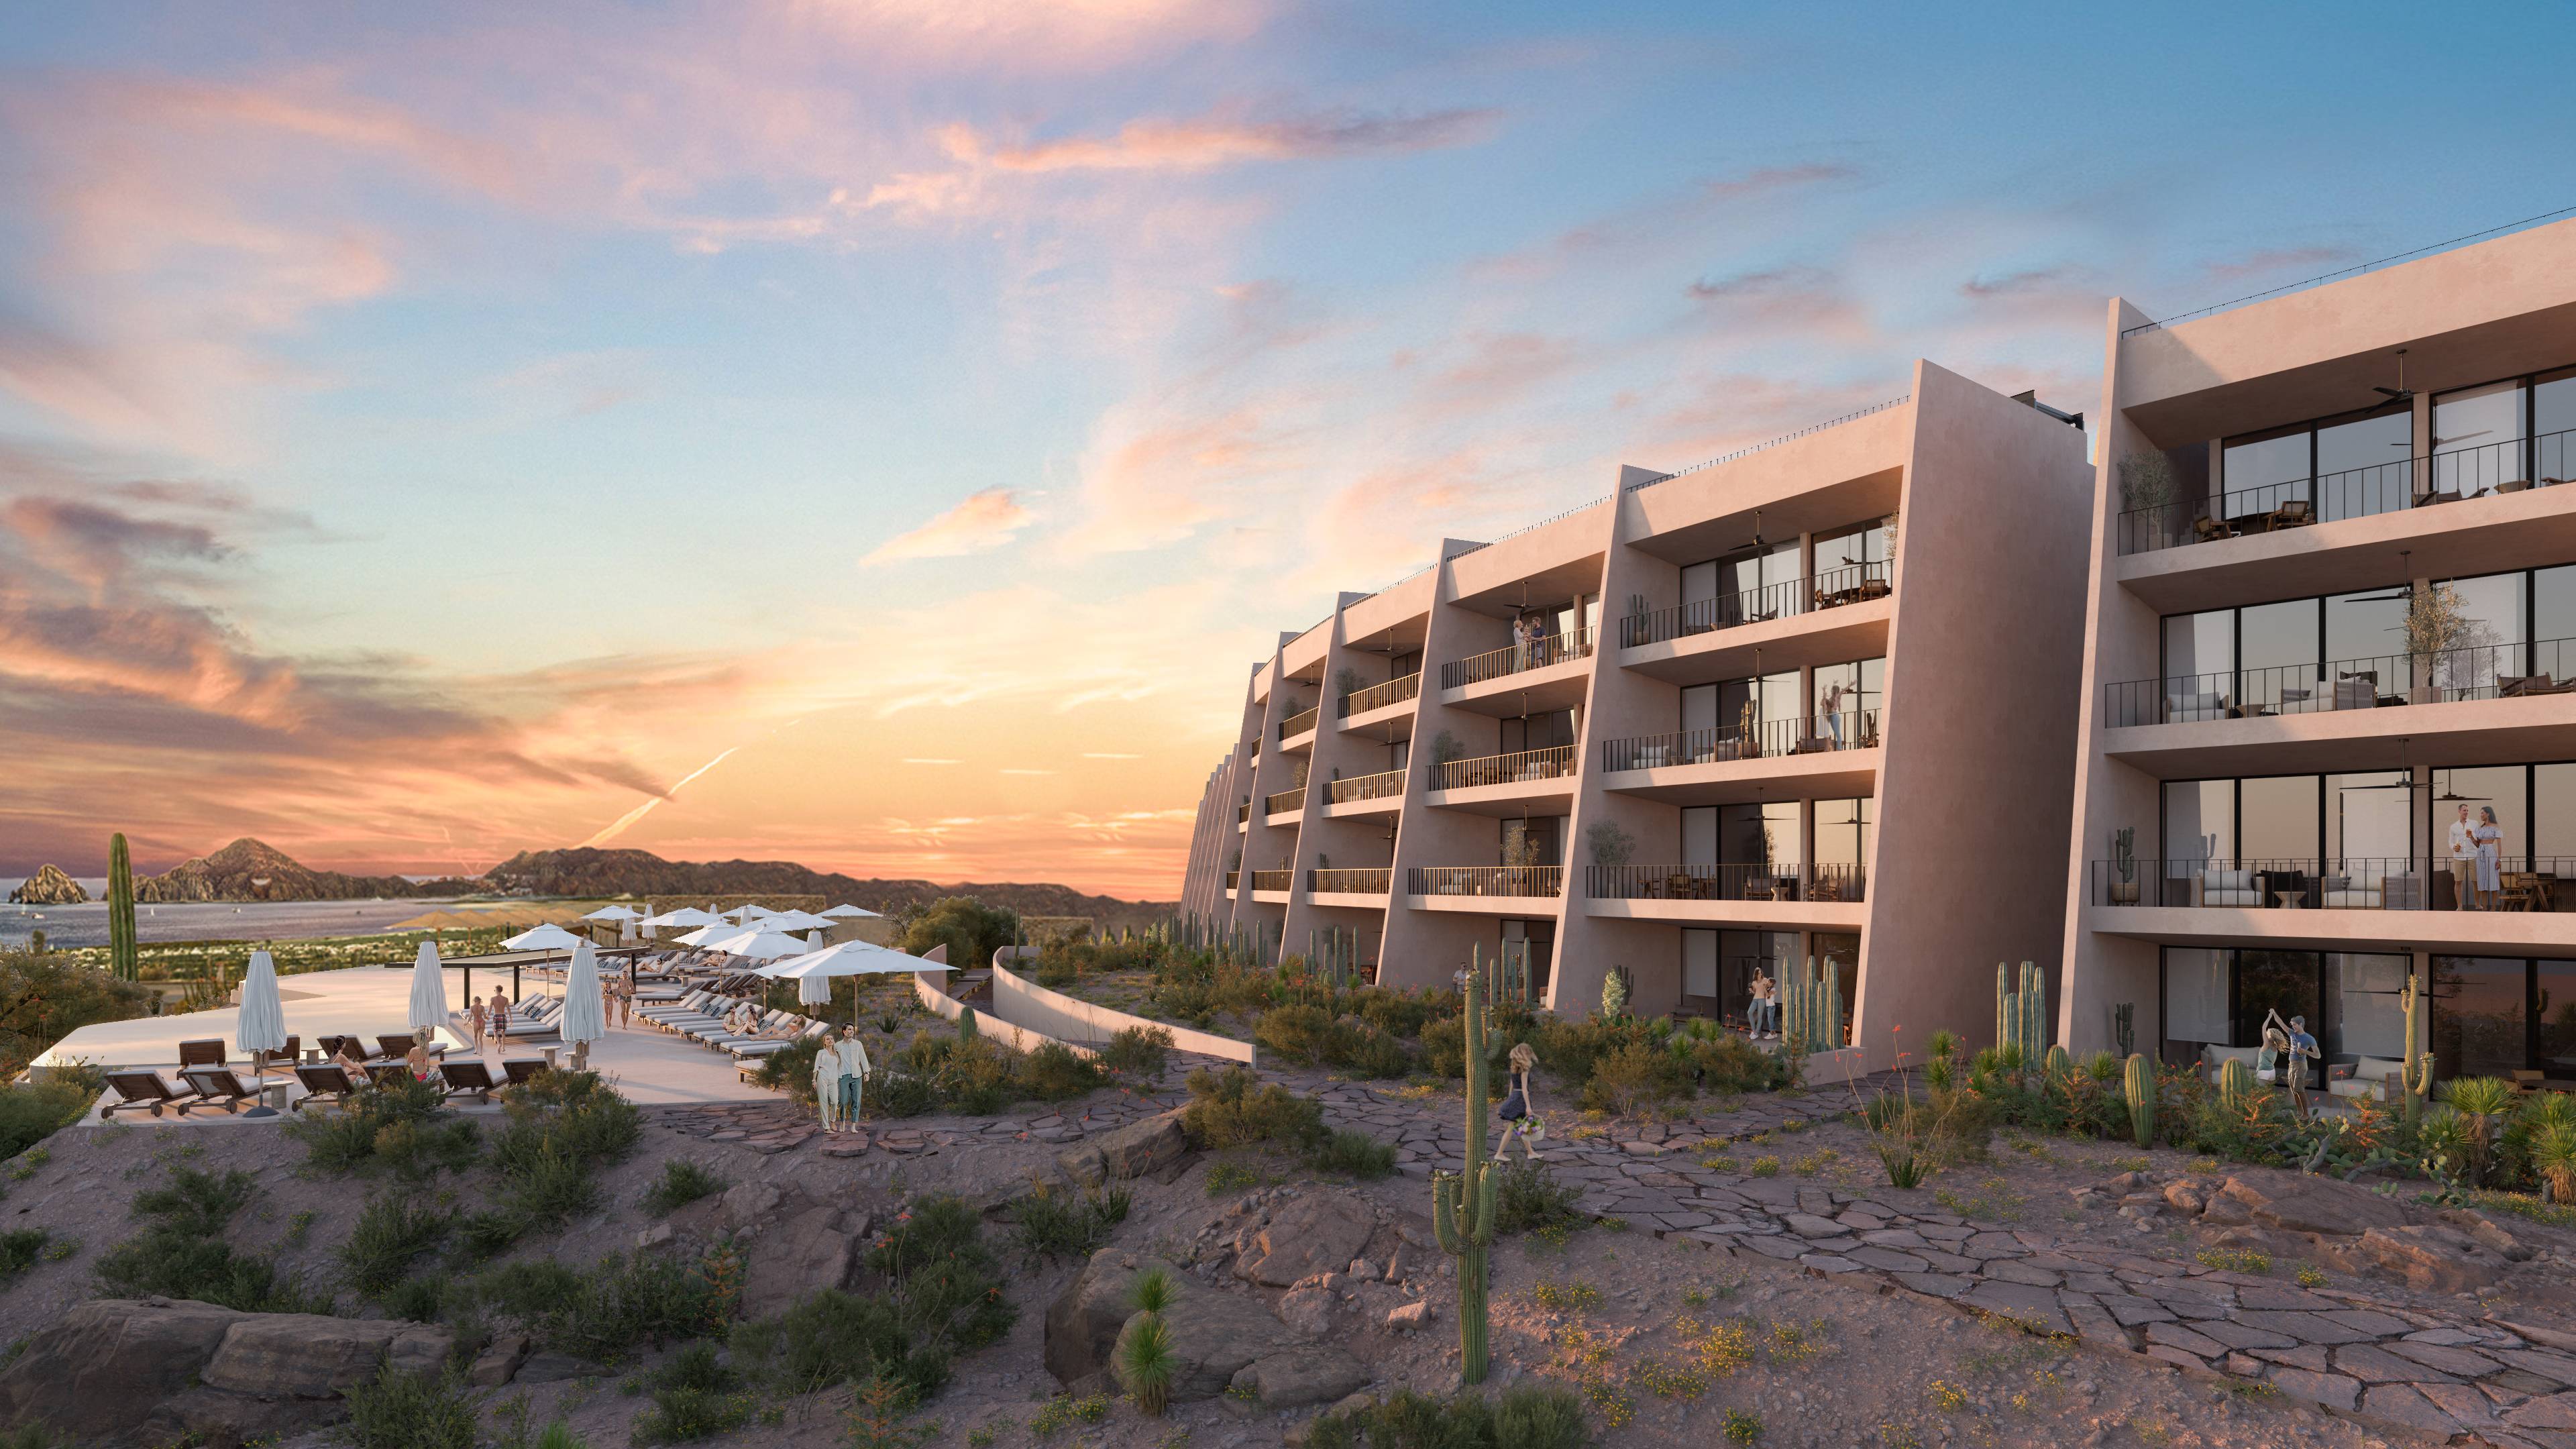 Condo Monte Rocella,Discover Serenity and Luxury in Los Cabos  Exclusive Condos with Unmatched Views